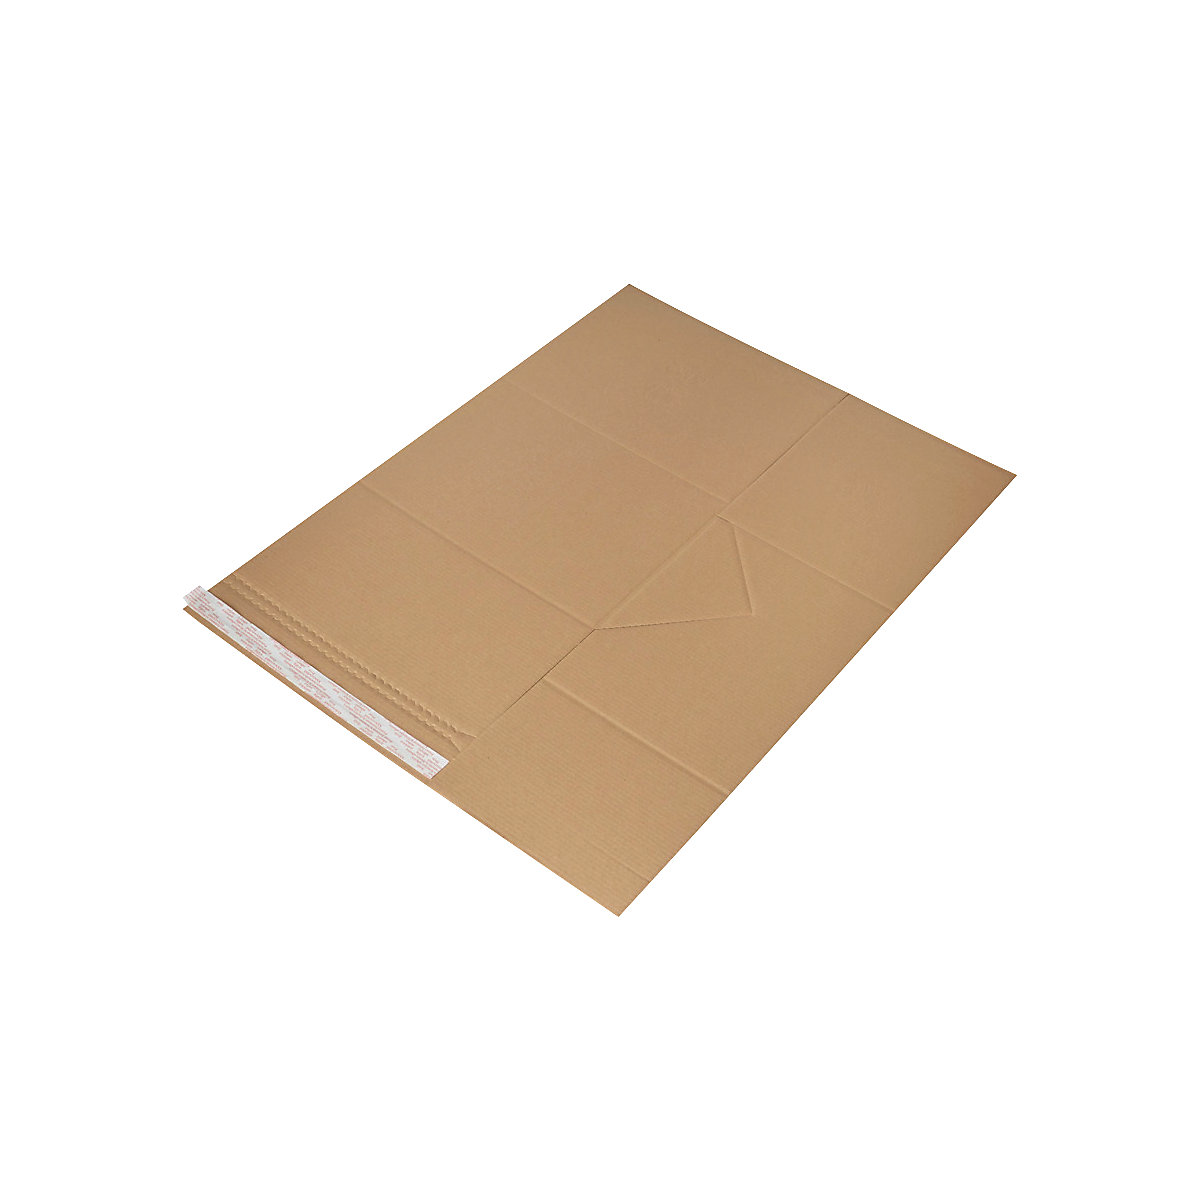 Imballaggio universale Drehfix – flow, con chiusura autoadesiva, lungh. x largh. 330 x 260 mm, a partire da 20 pz.-4